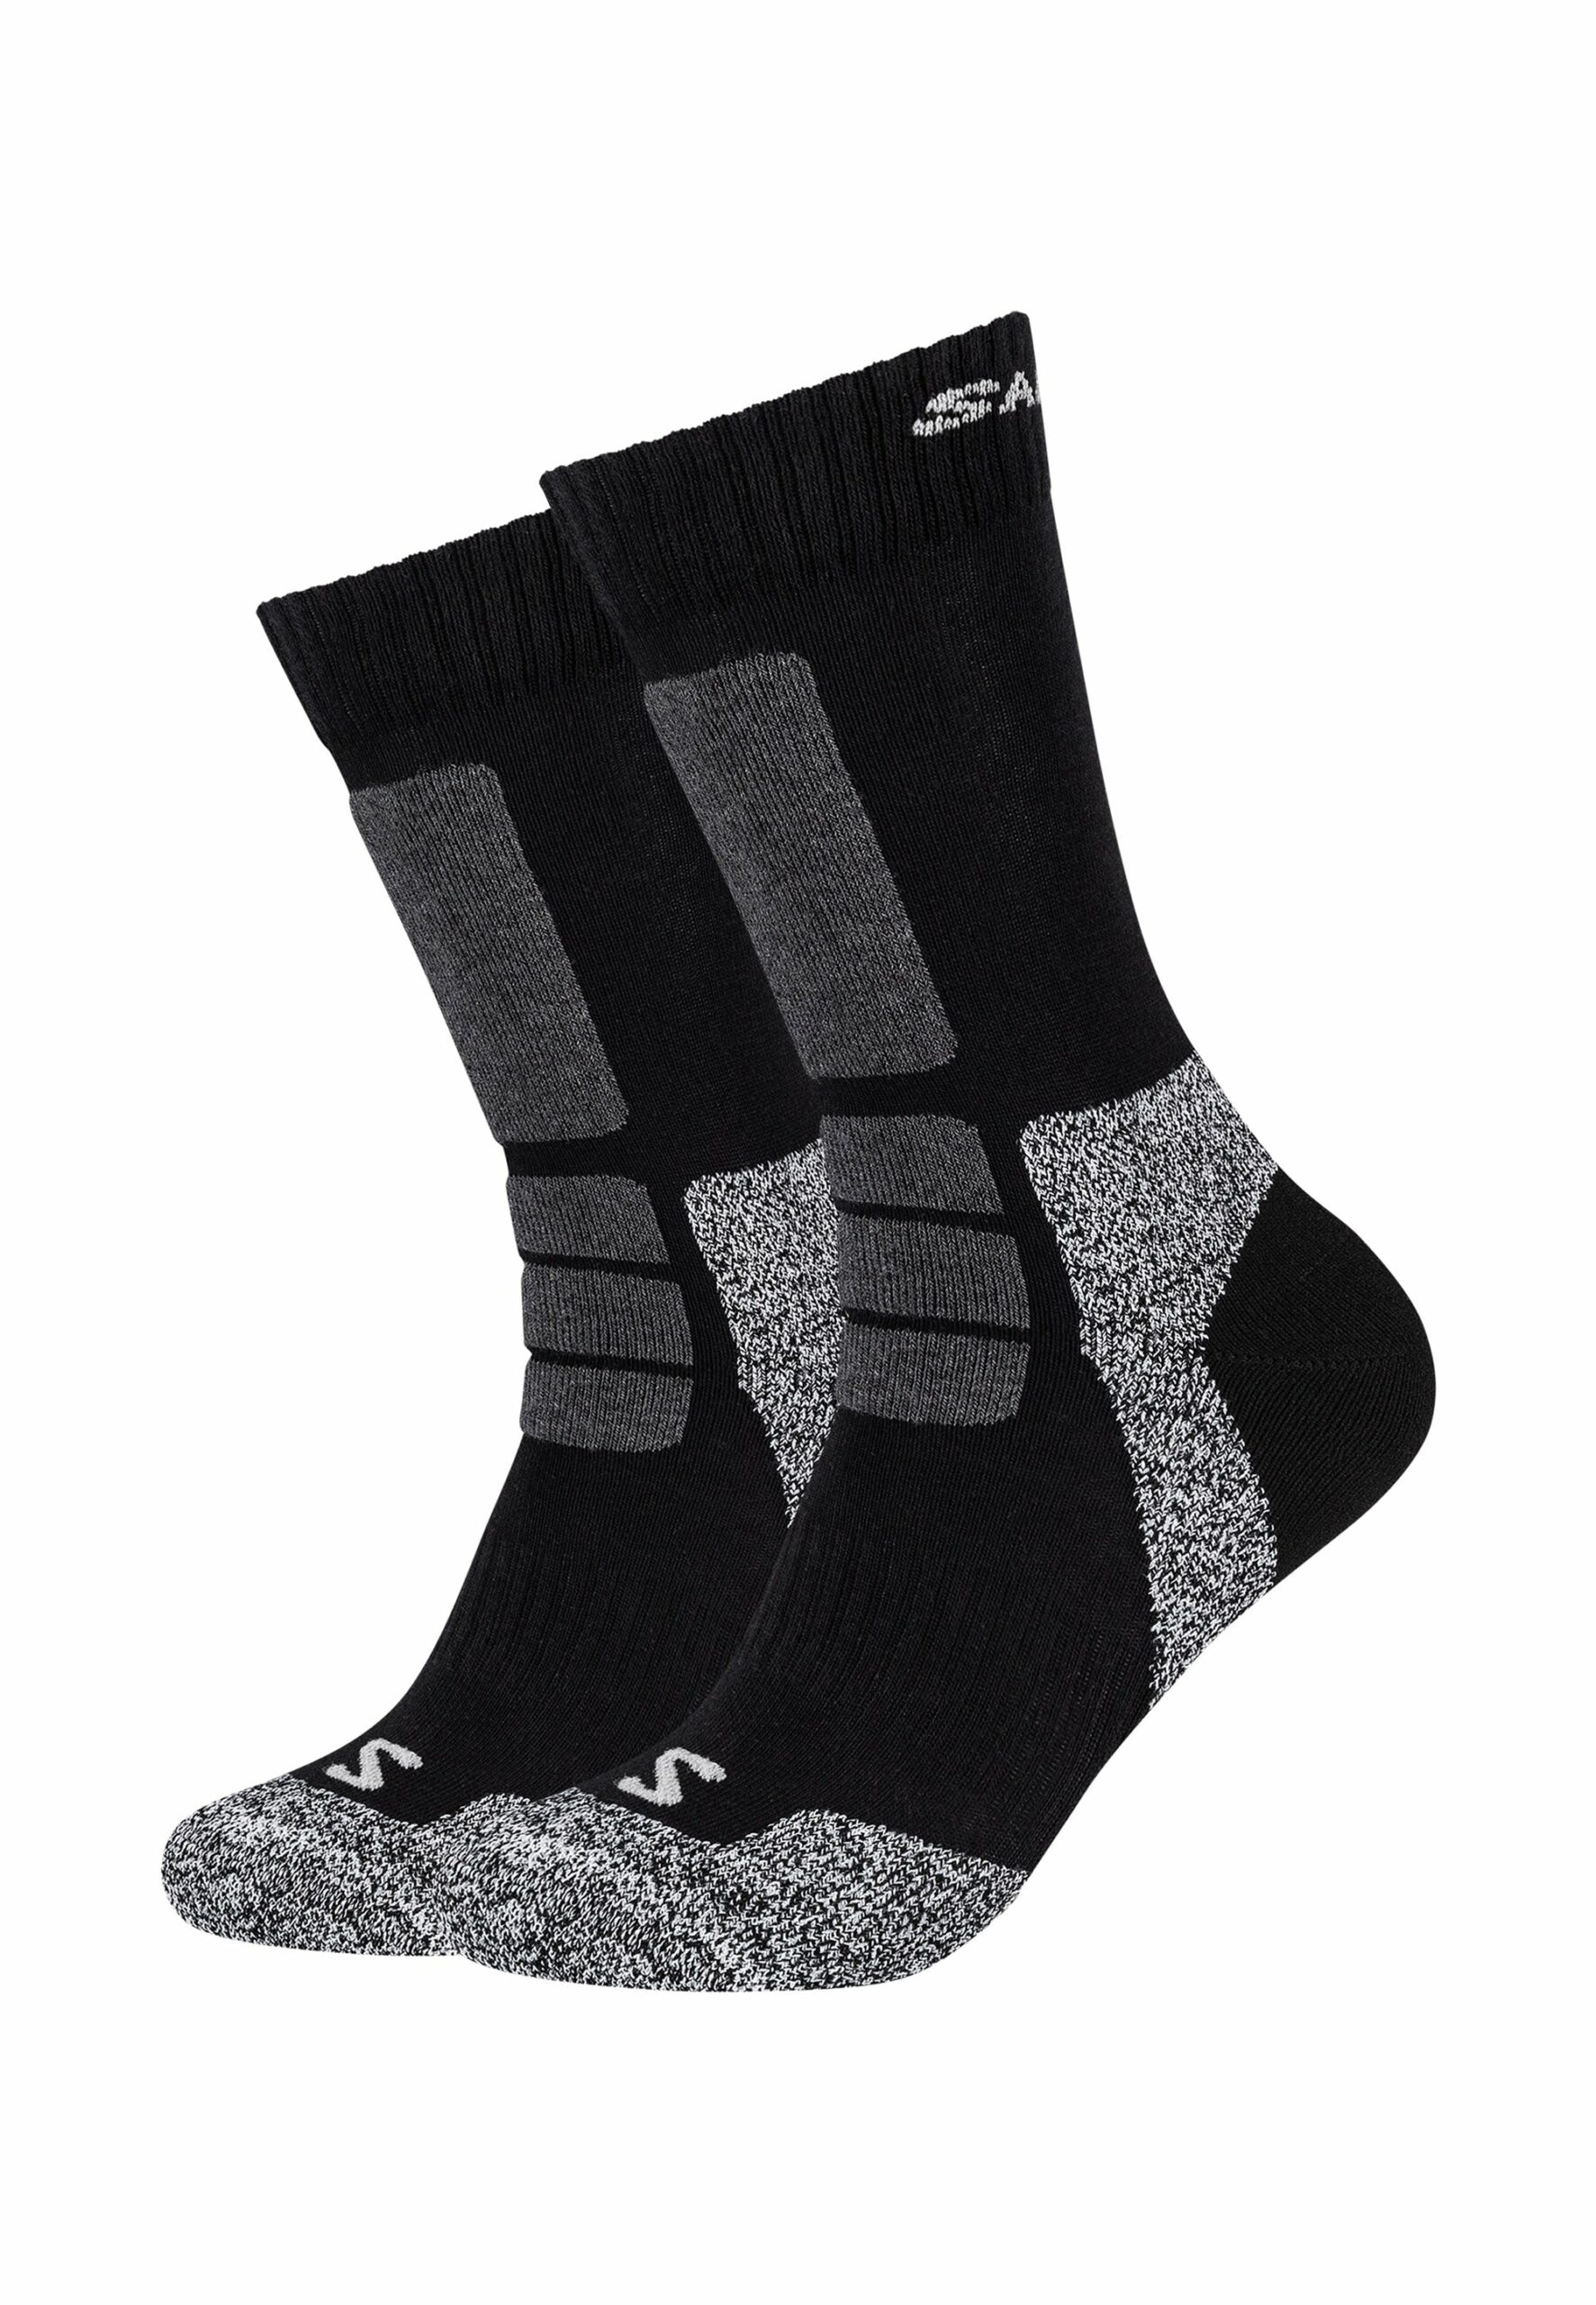 Salomon Socken hike 2er Pack Black/Light Grey online kaufen bei Socken